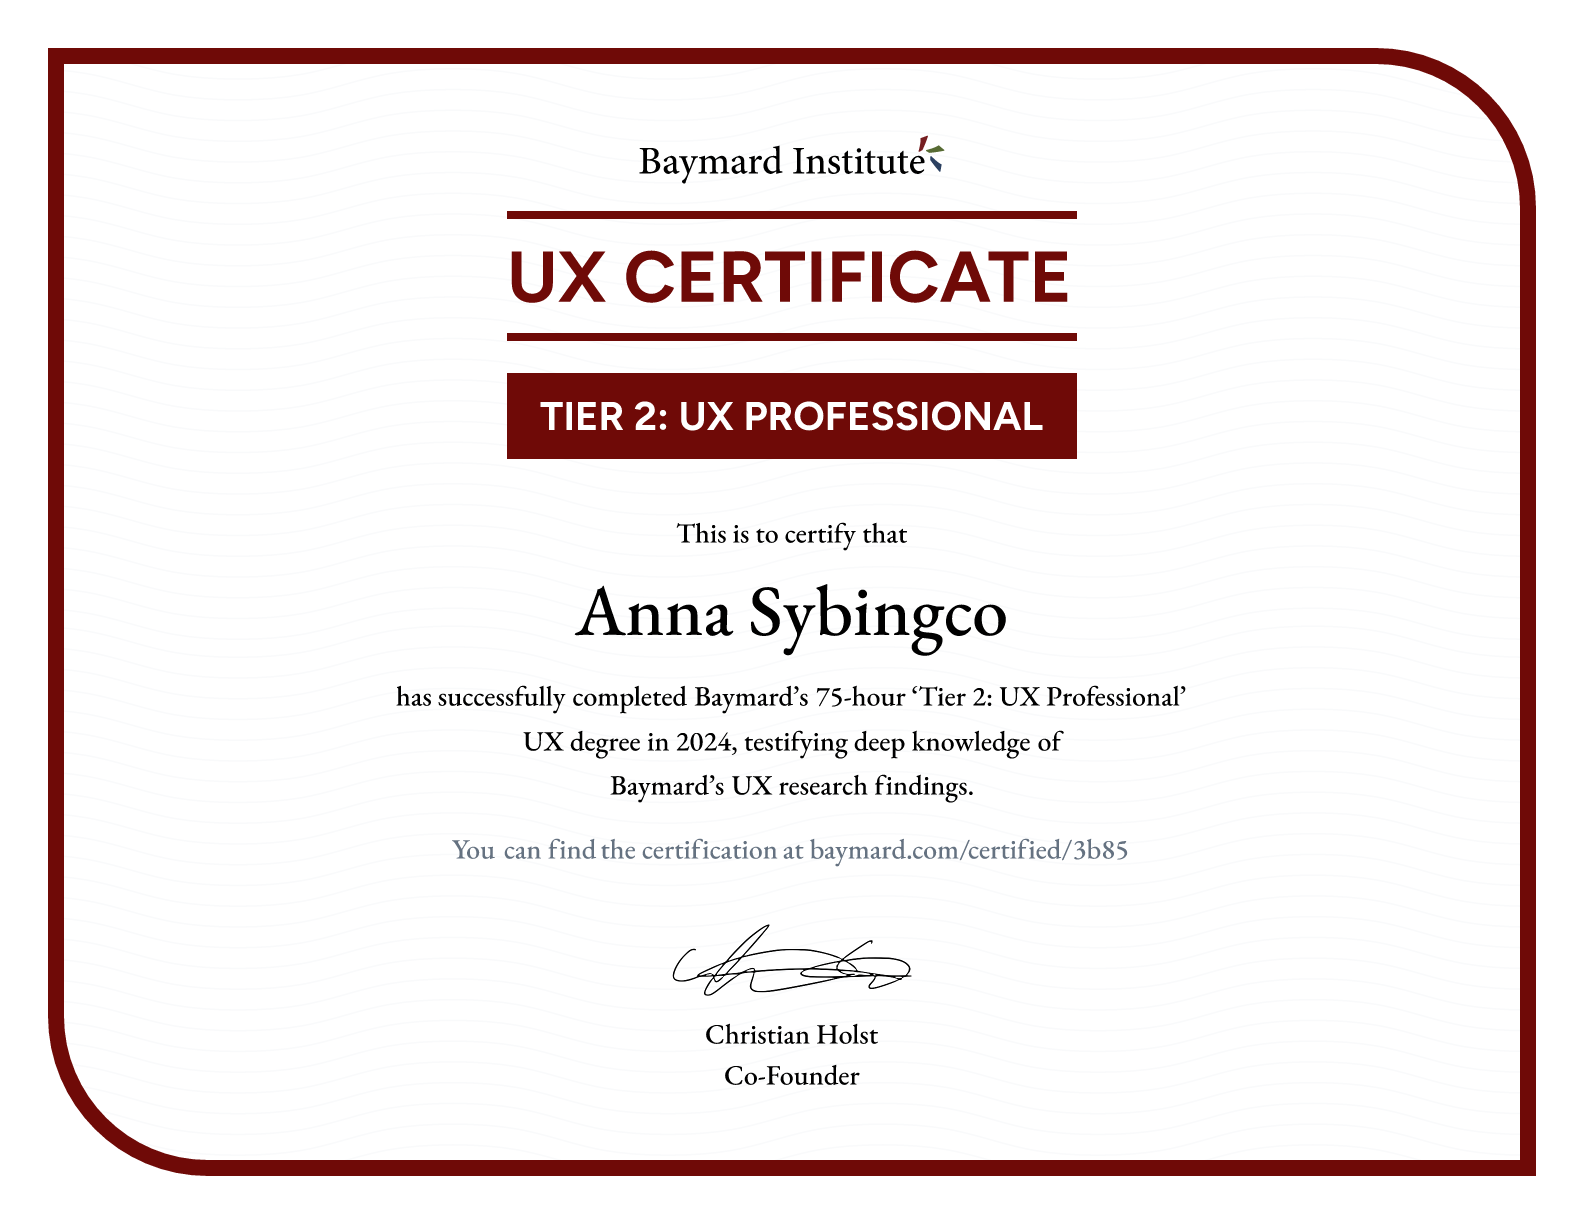 Anna Sybingco’s certificate